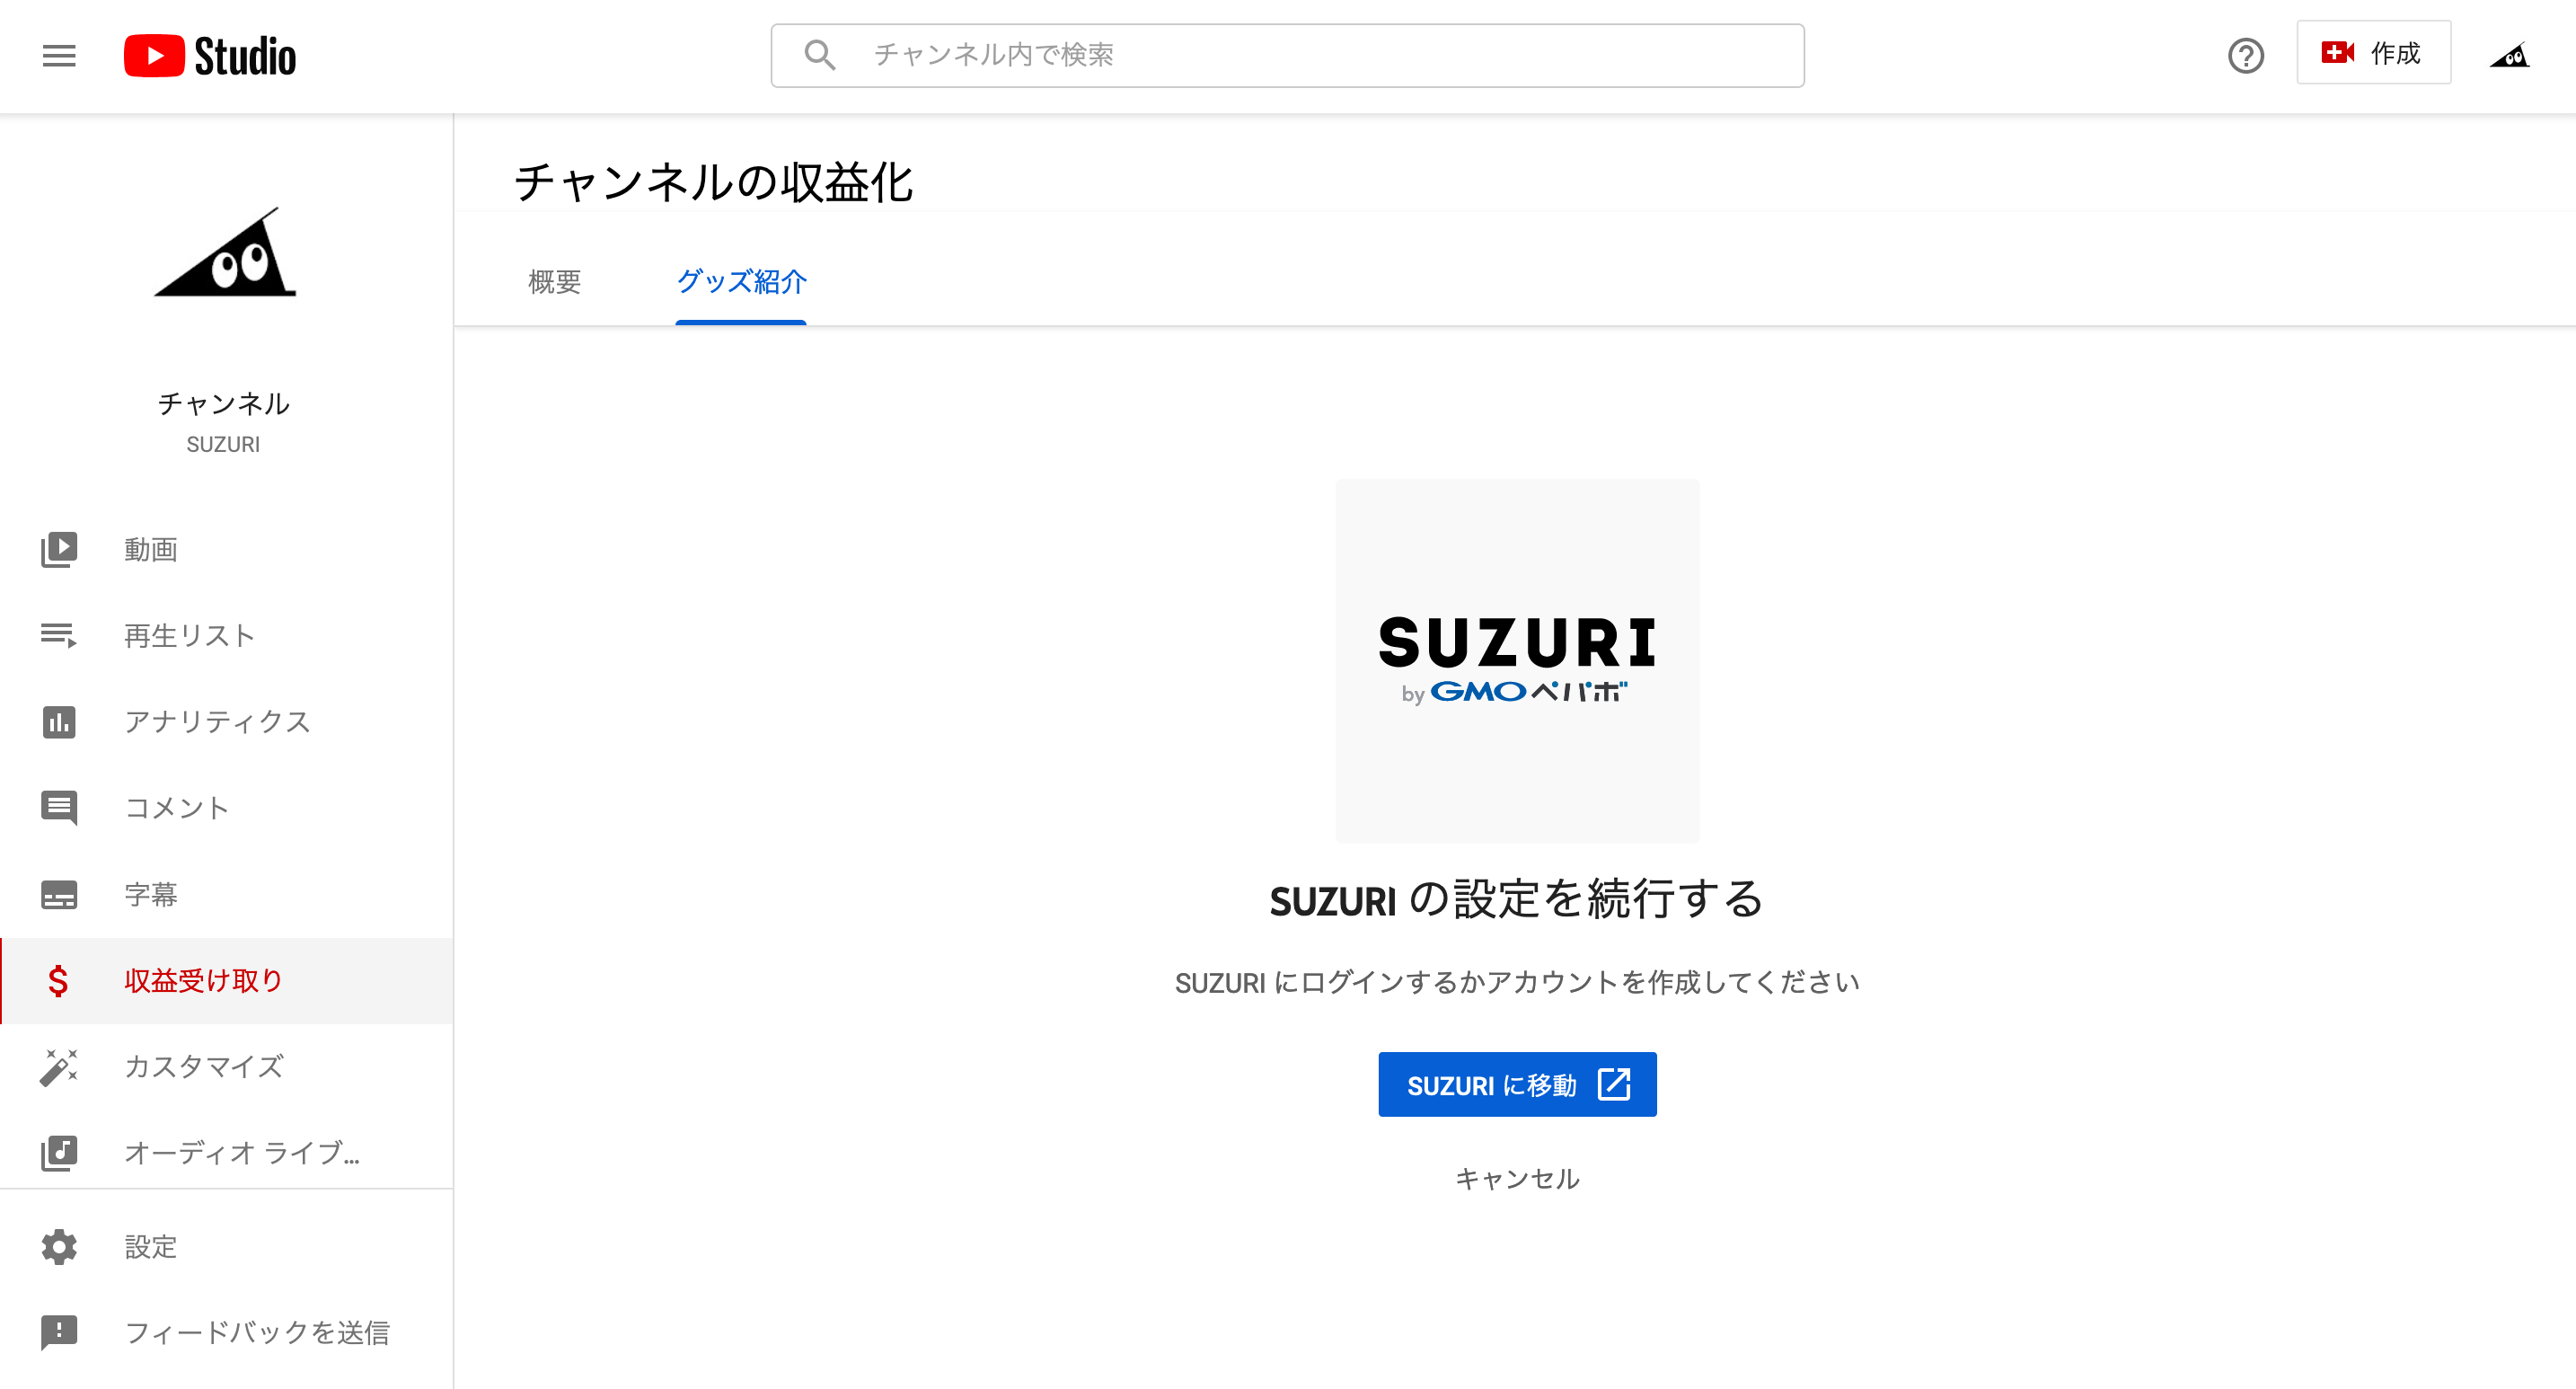 忍者スリスリくん Surisurikun の Youtubeでグッズを紹介できる機能に対応しマシた というジャーナル Suzuri スズリ